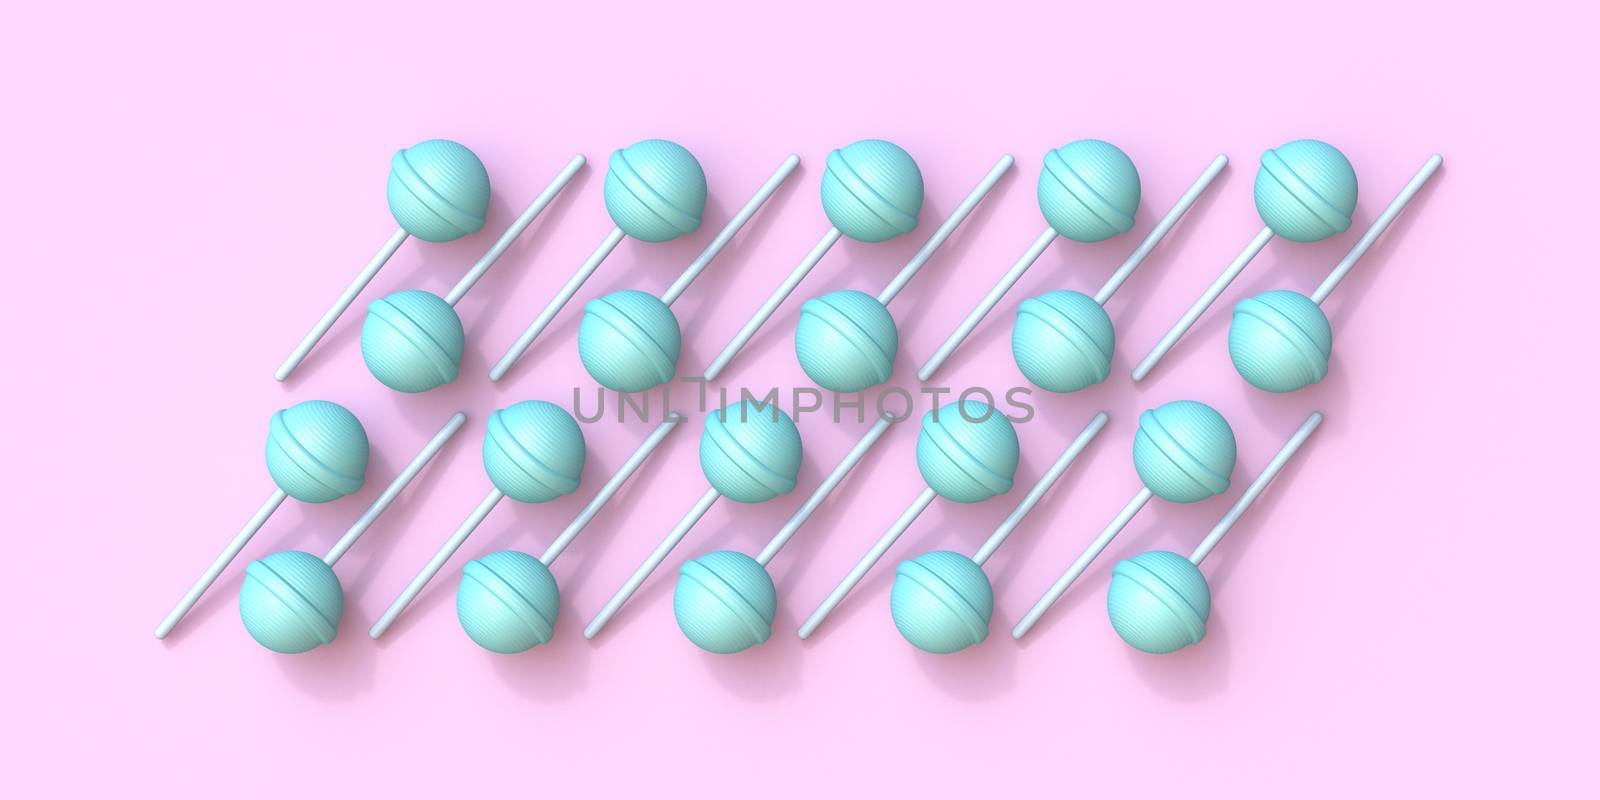 Lollipops arranged 3D by djmilic